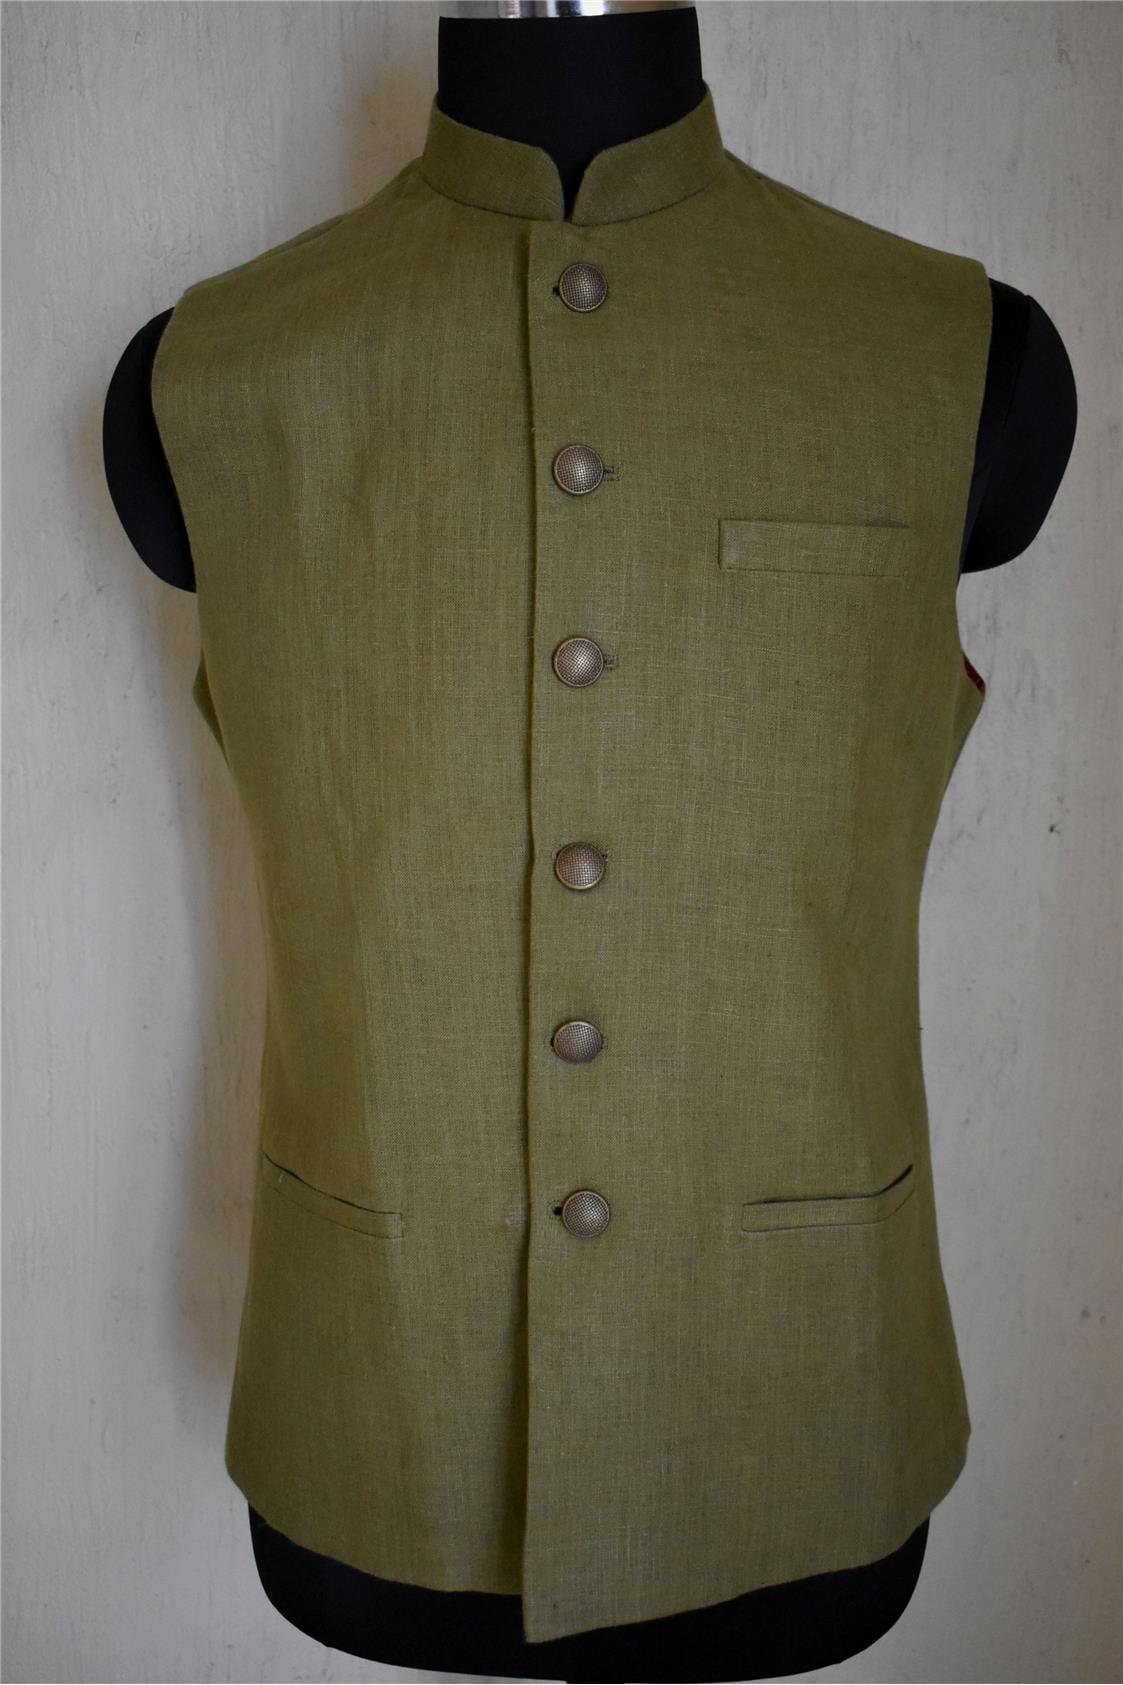 Indian Designer Brown Nehru Waistcoat Ethnic Nehru Collar Jacket Camel Brown Best for Men